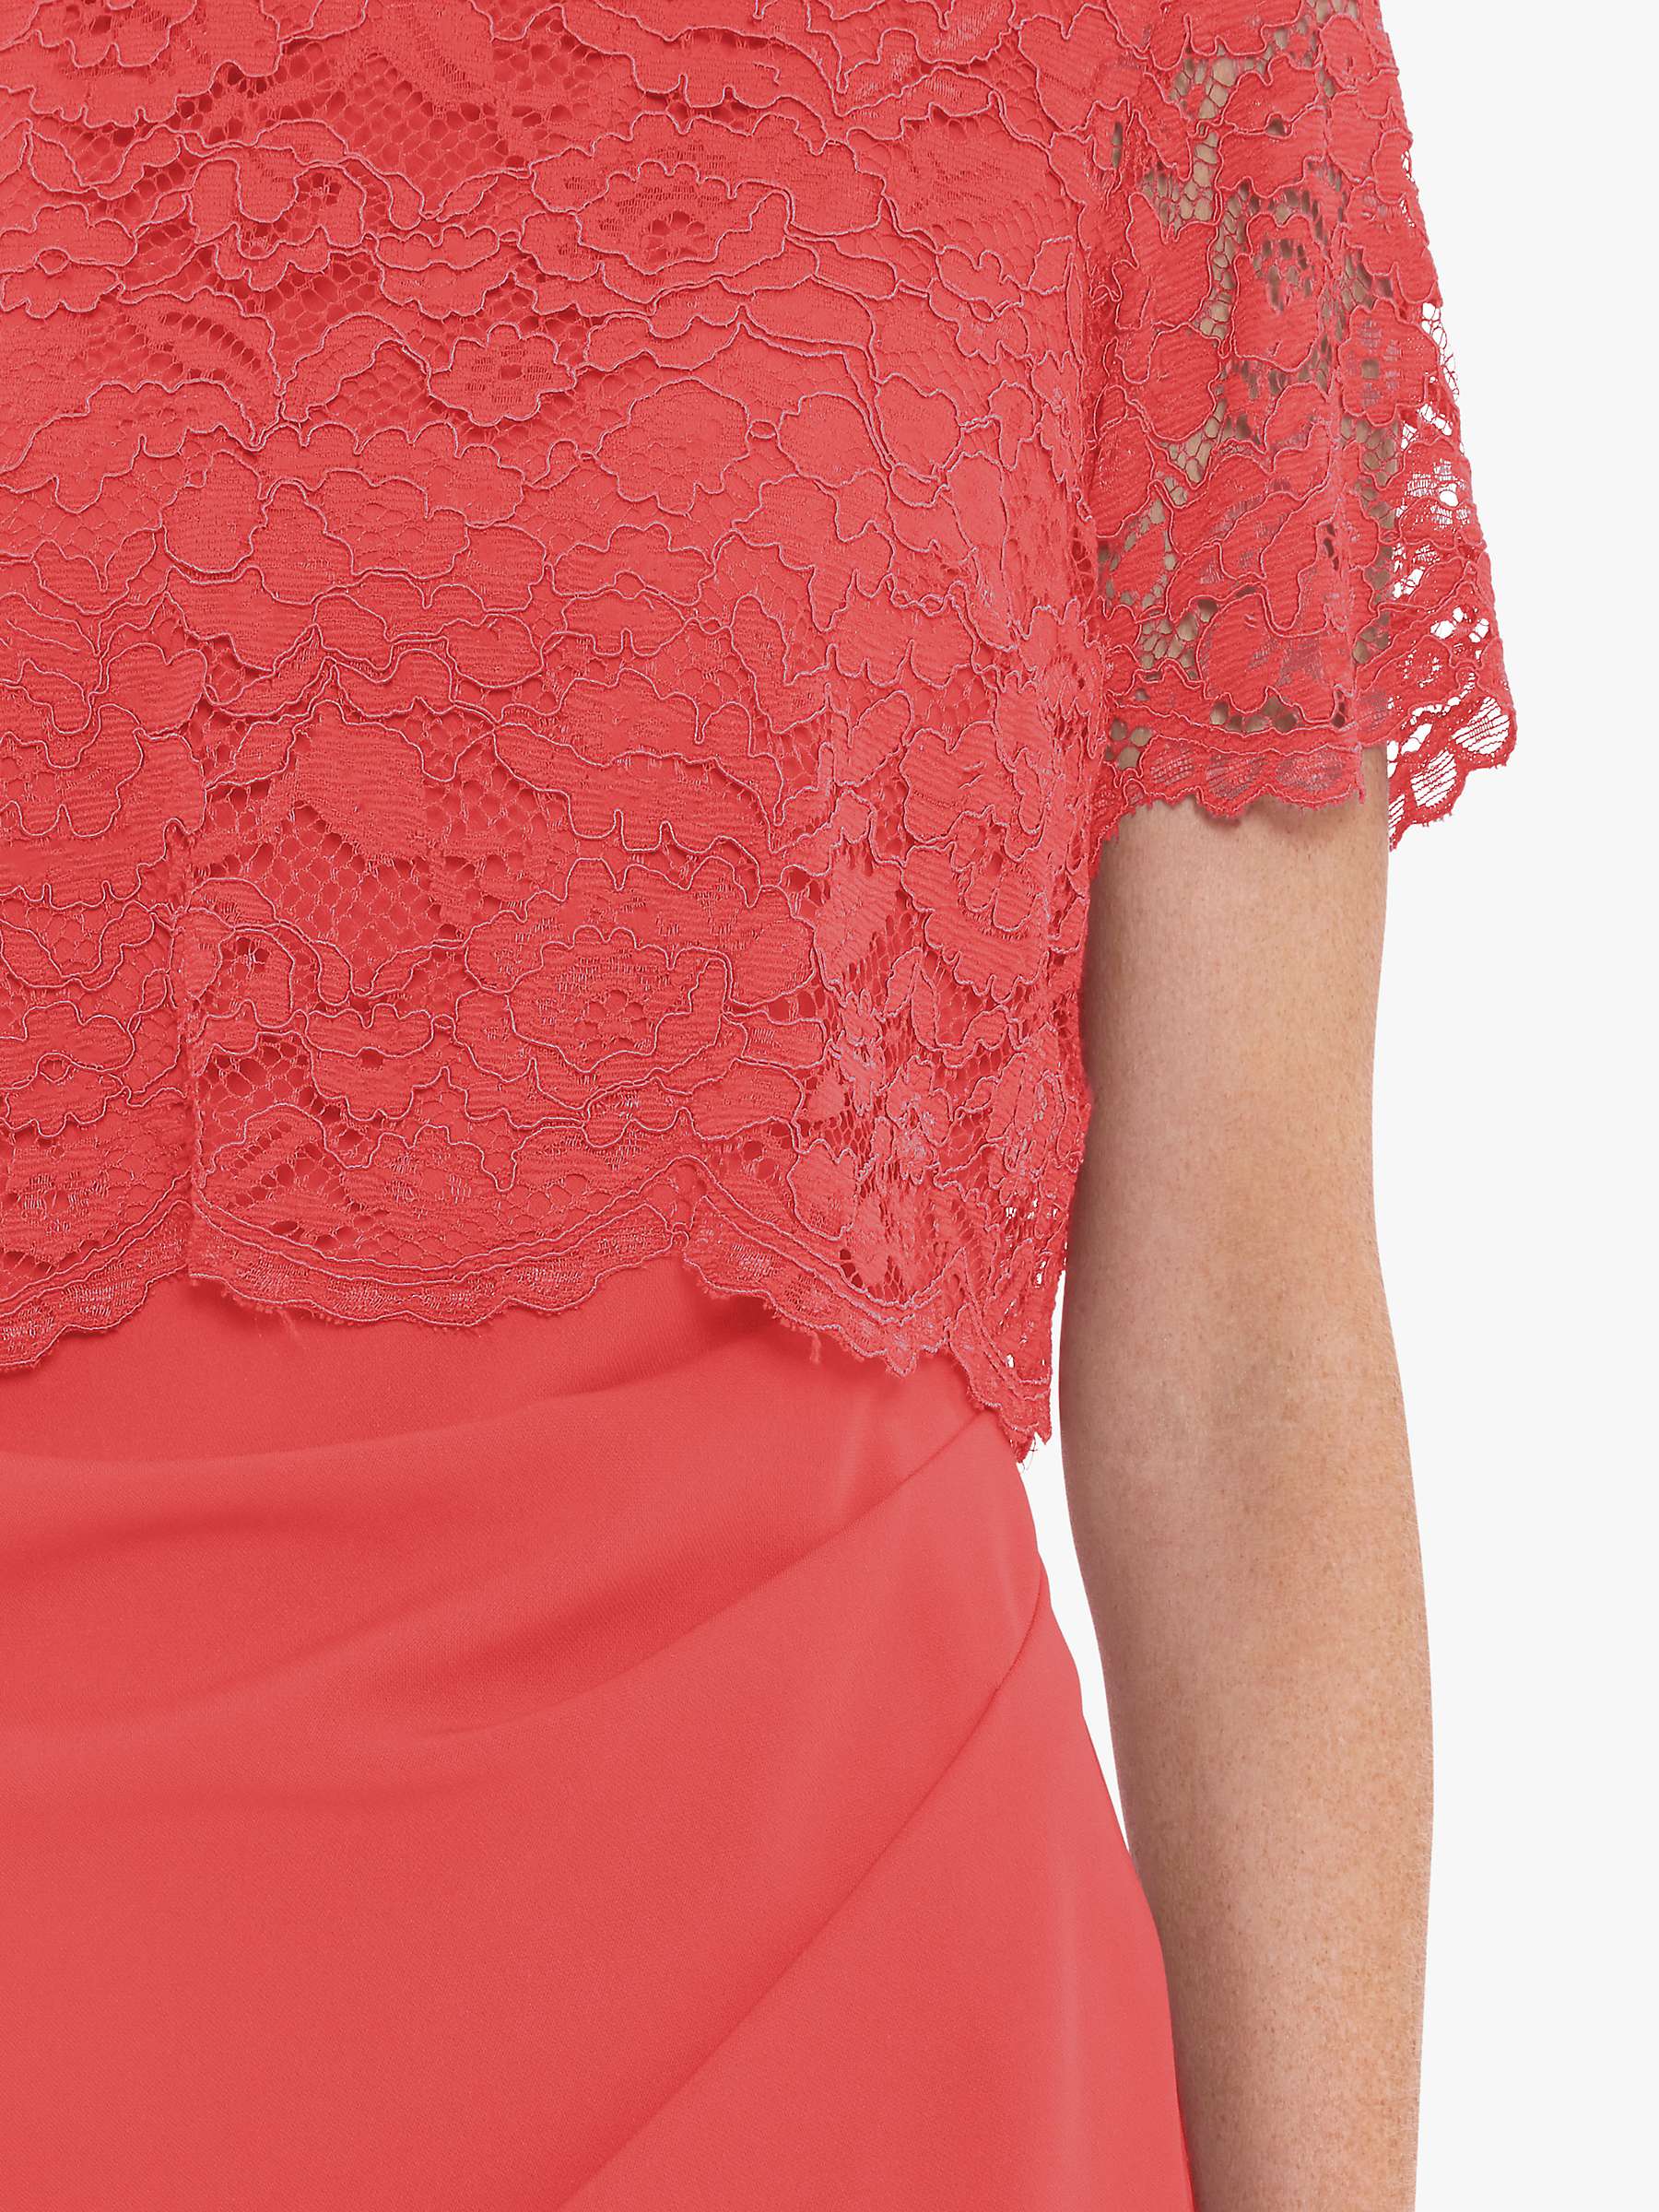 Buy Gina Bacconi Kora Lace Midi Dress, Orange Red Online at johnlewis.com